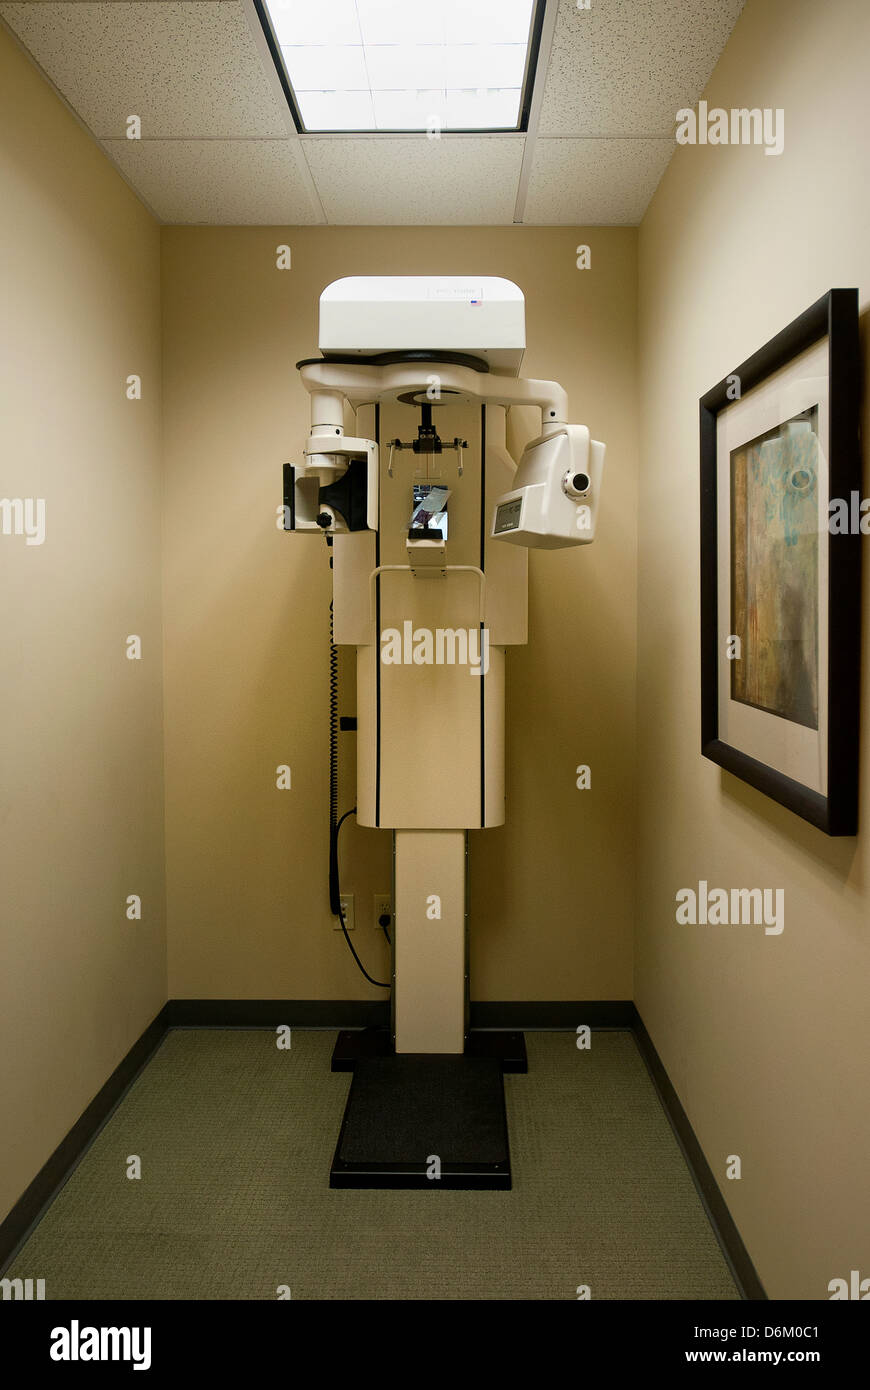 Dental panoramic x-ray machine. Stock Photo